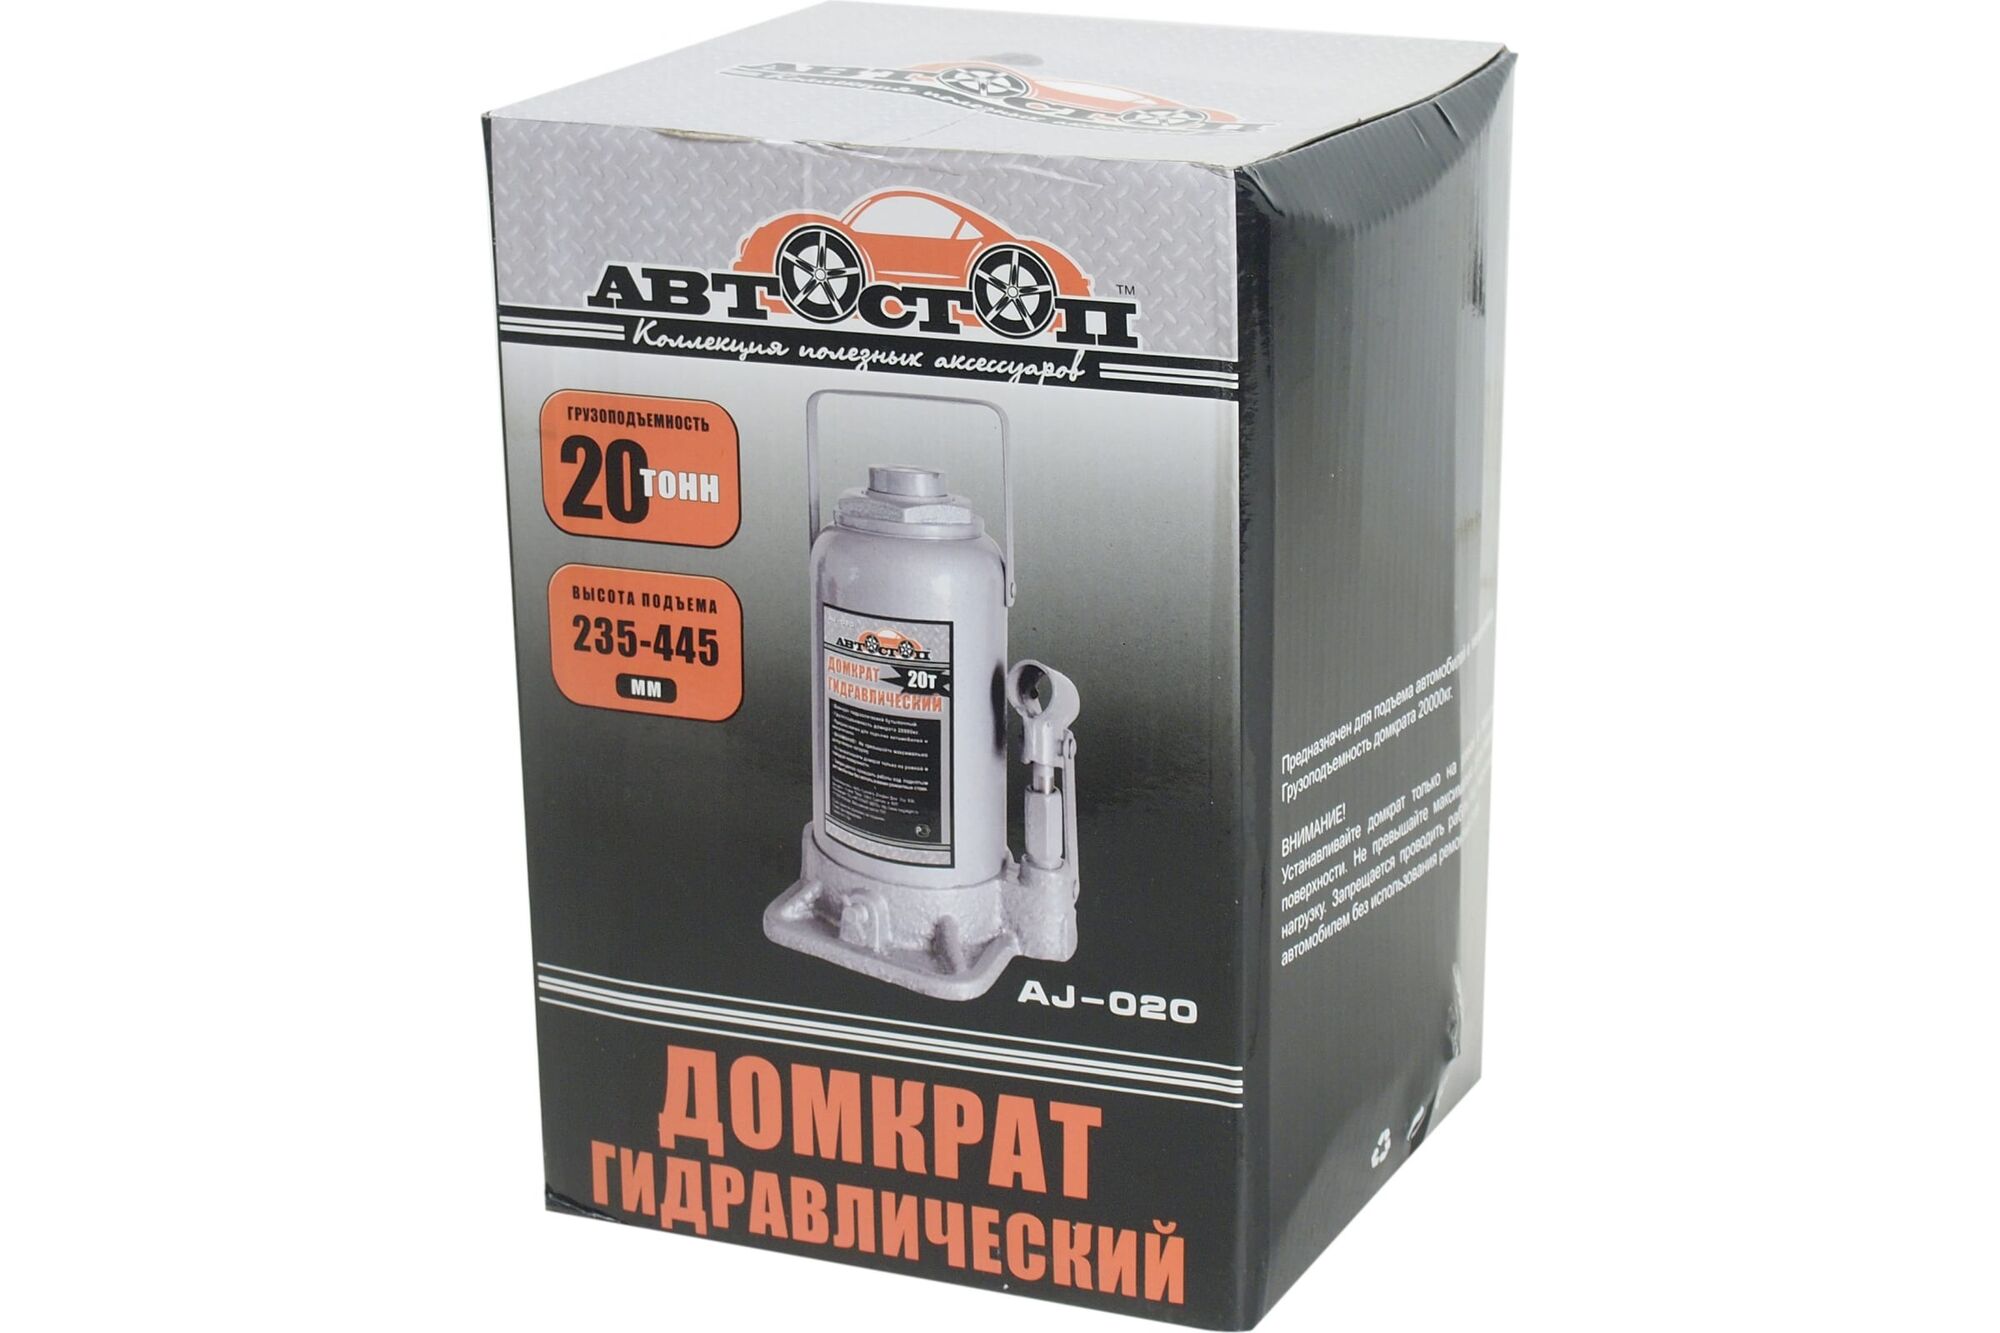 Гидравлический бутылочный домкрат 20 т АВТОСТОП AJ-020 Автостоп